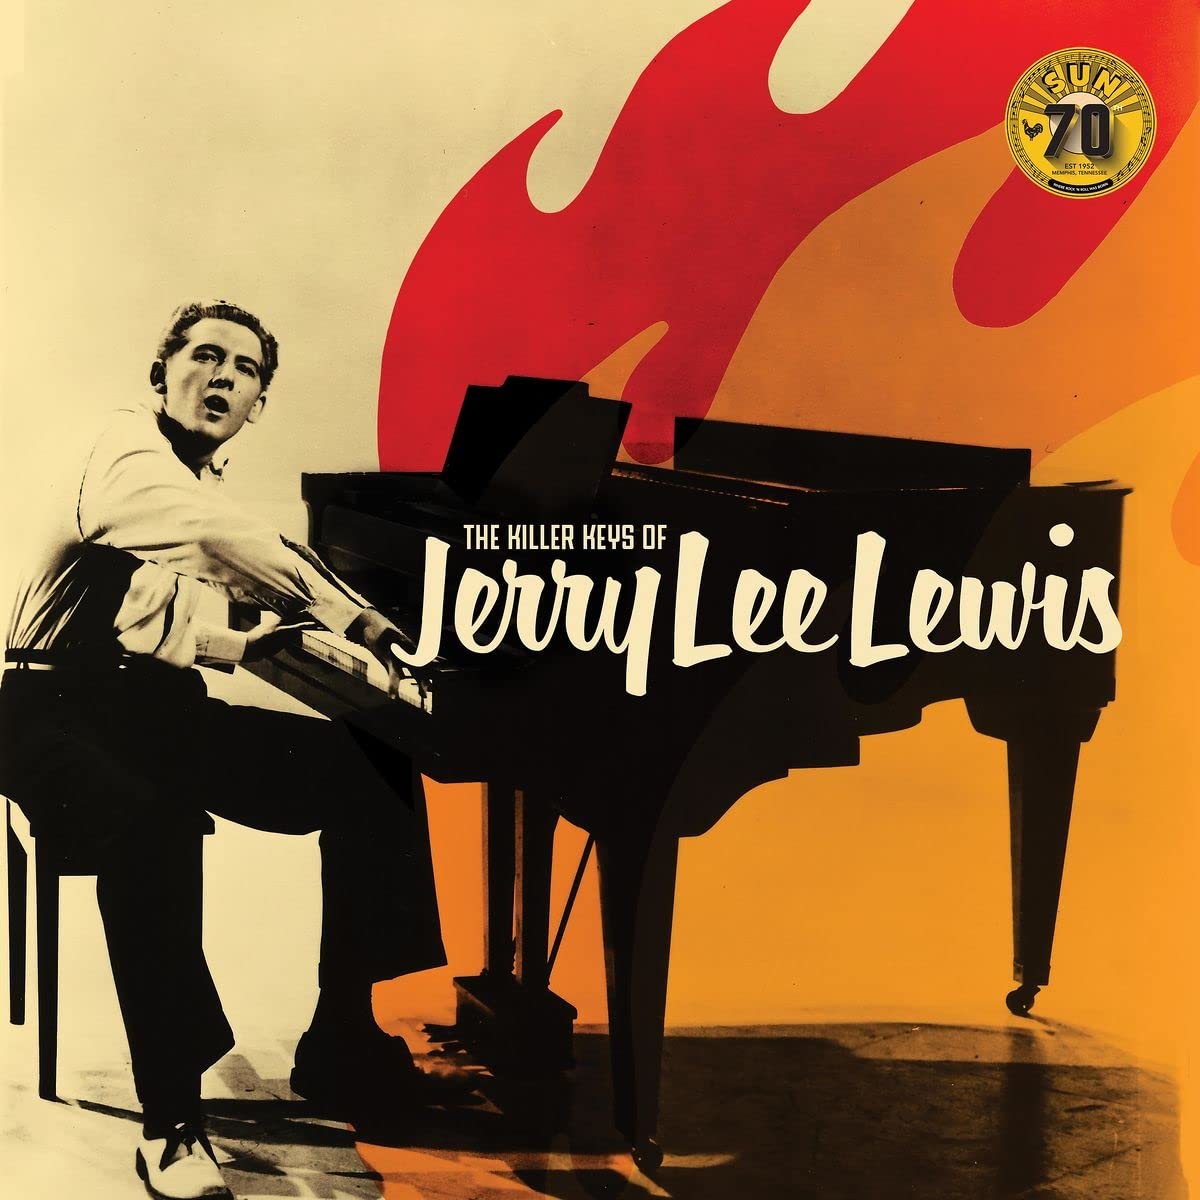 CD Shop - LEWIS JERRY LEE The Killer Keys Of Jerry Lee Lewis